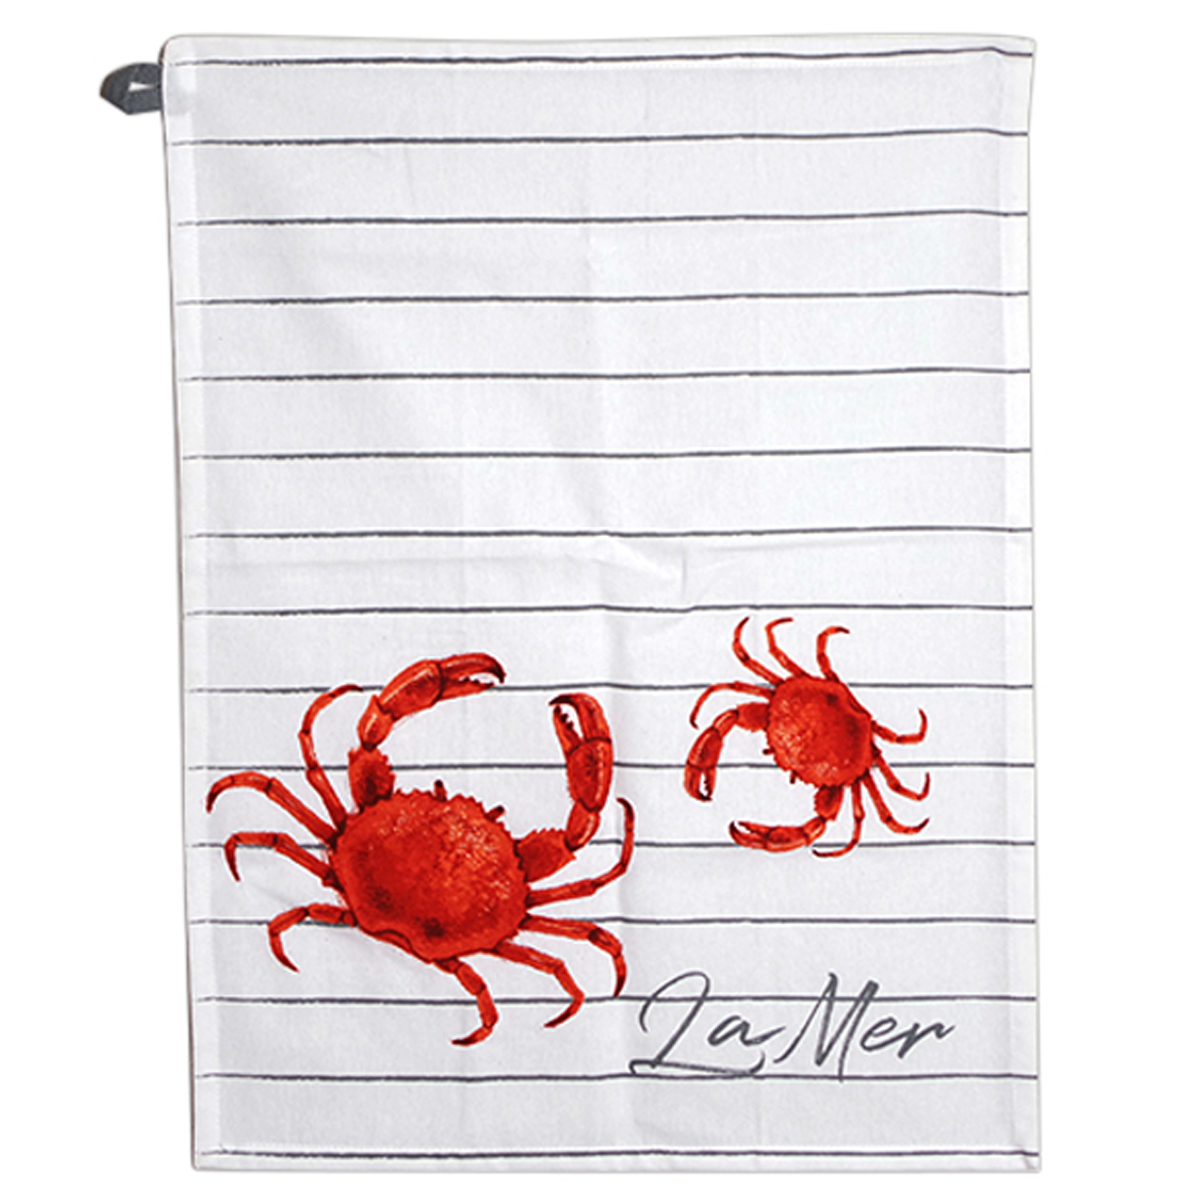 Torchon coton \'La Mer\' rouge blanc (crabe) - 60x45 cm - [R6592]